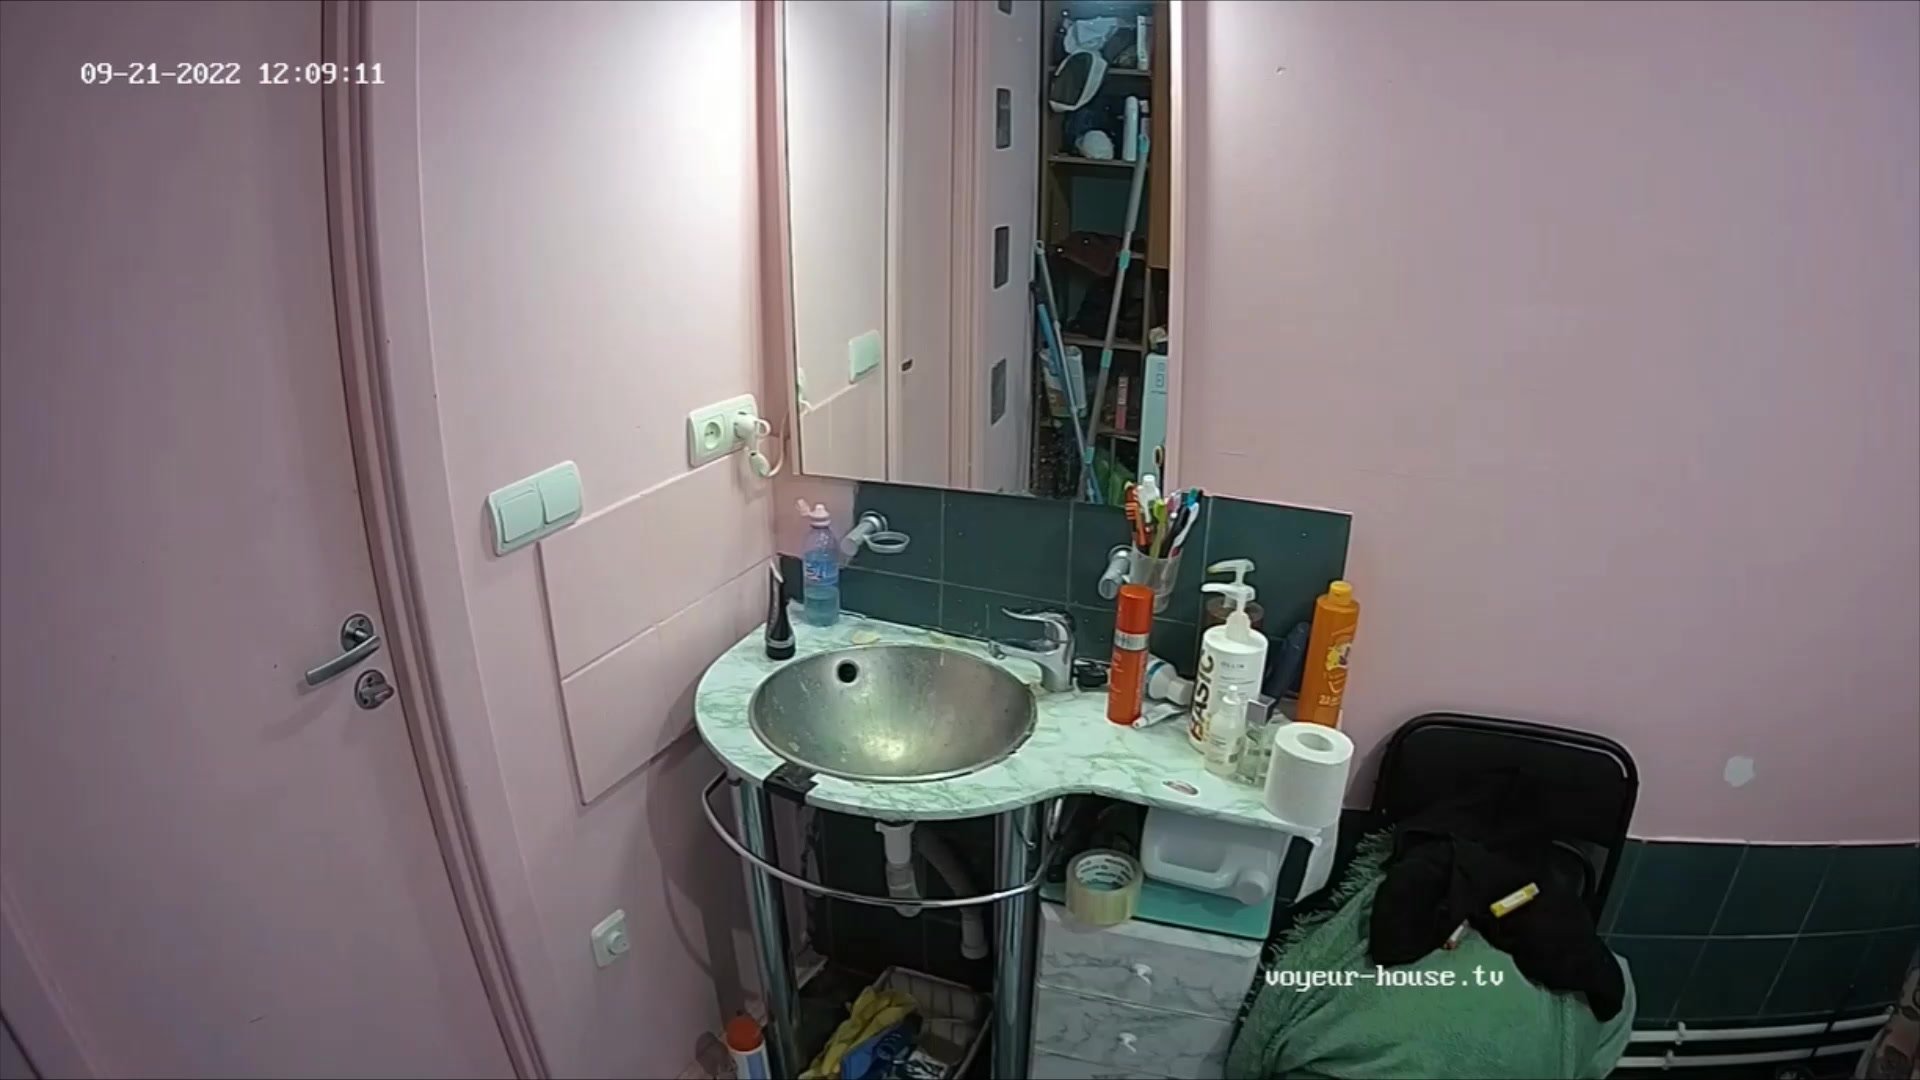 Woman pooping in Toilet 497